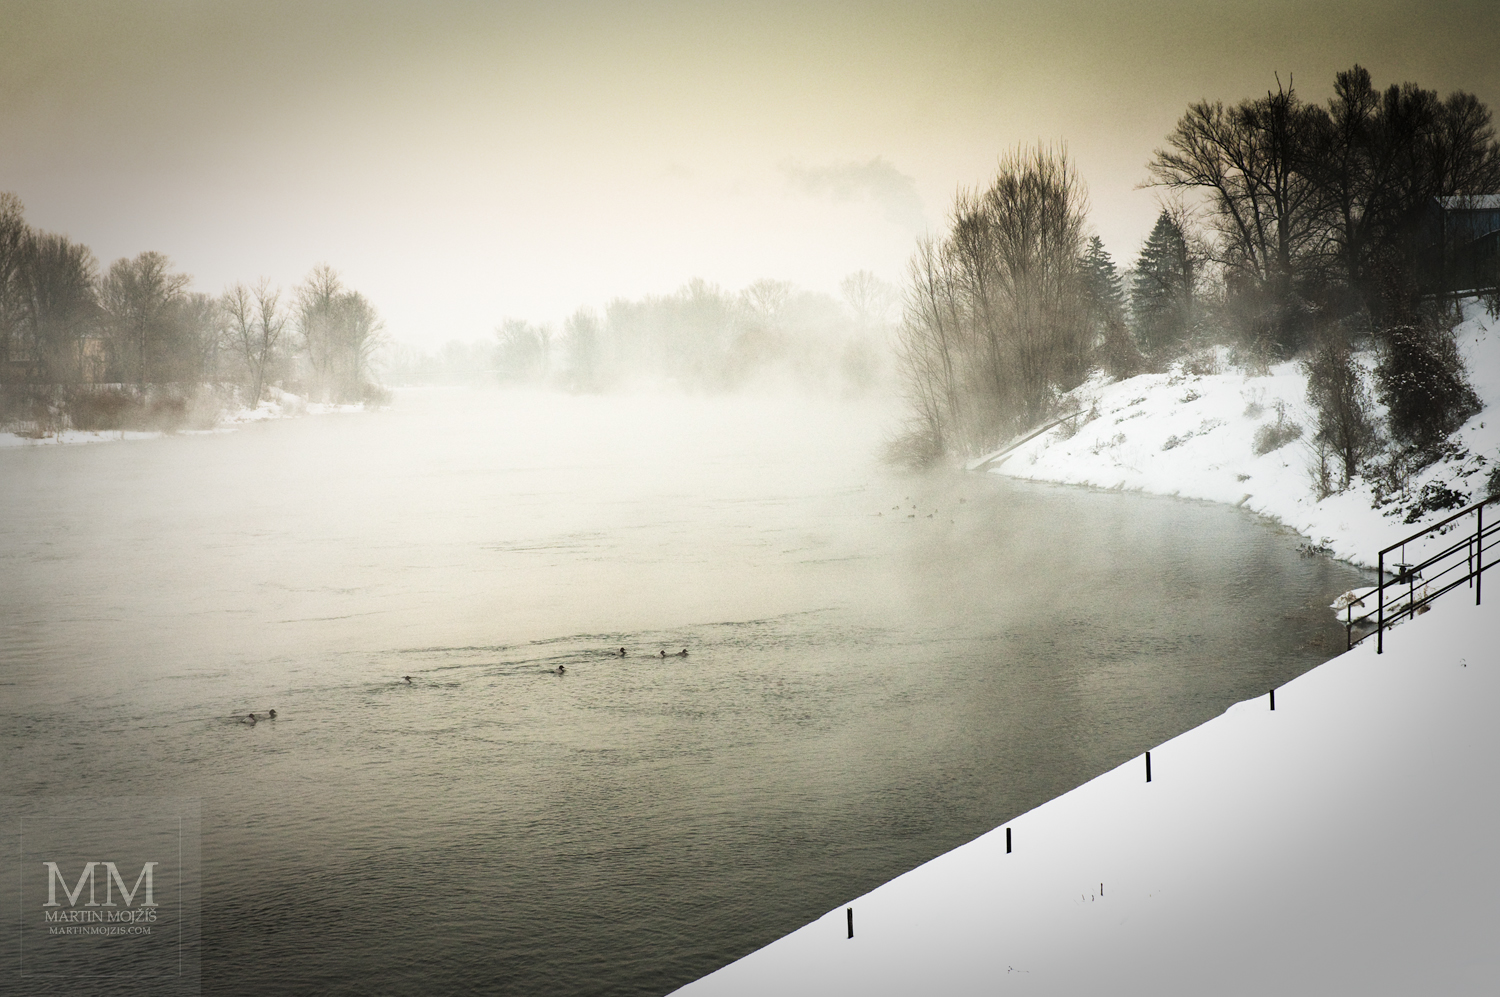 Řeka v zimě, kachny, sníh, mlha.